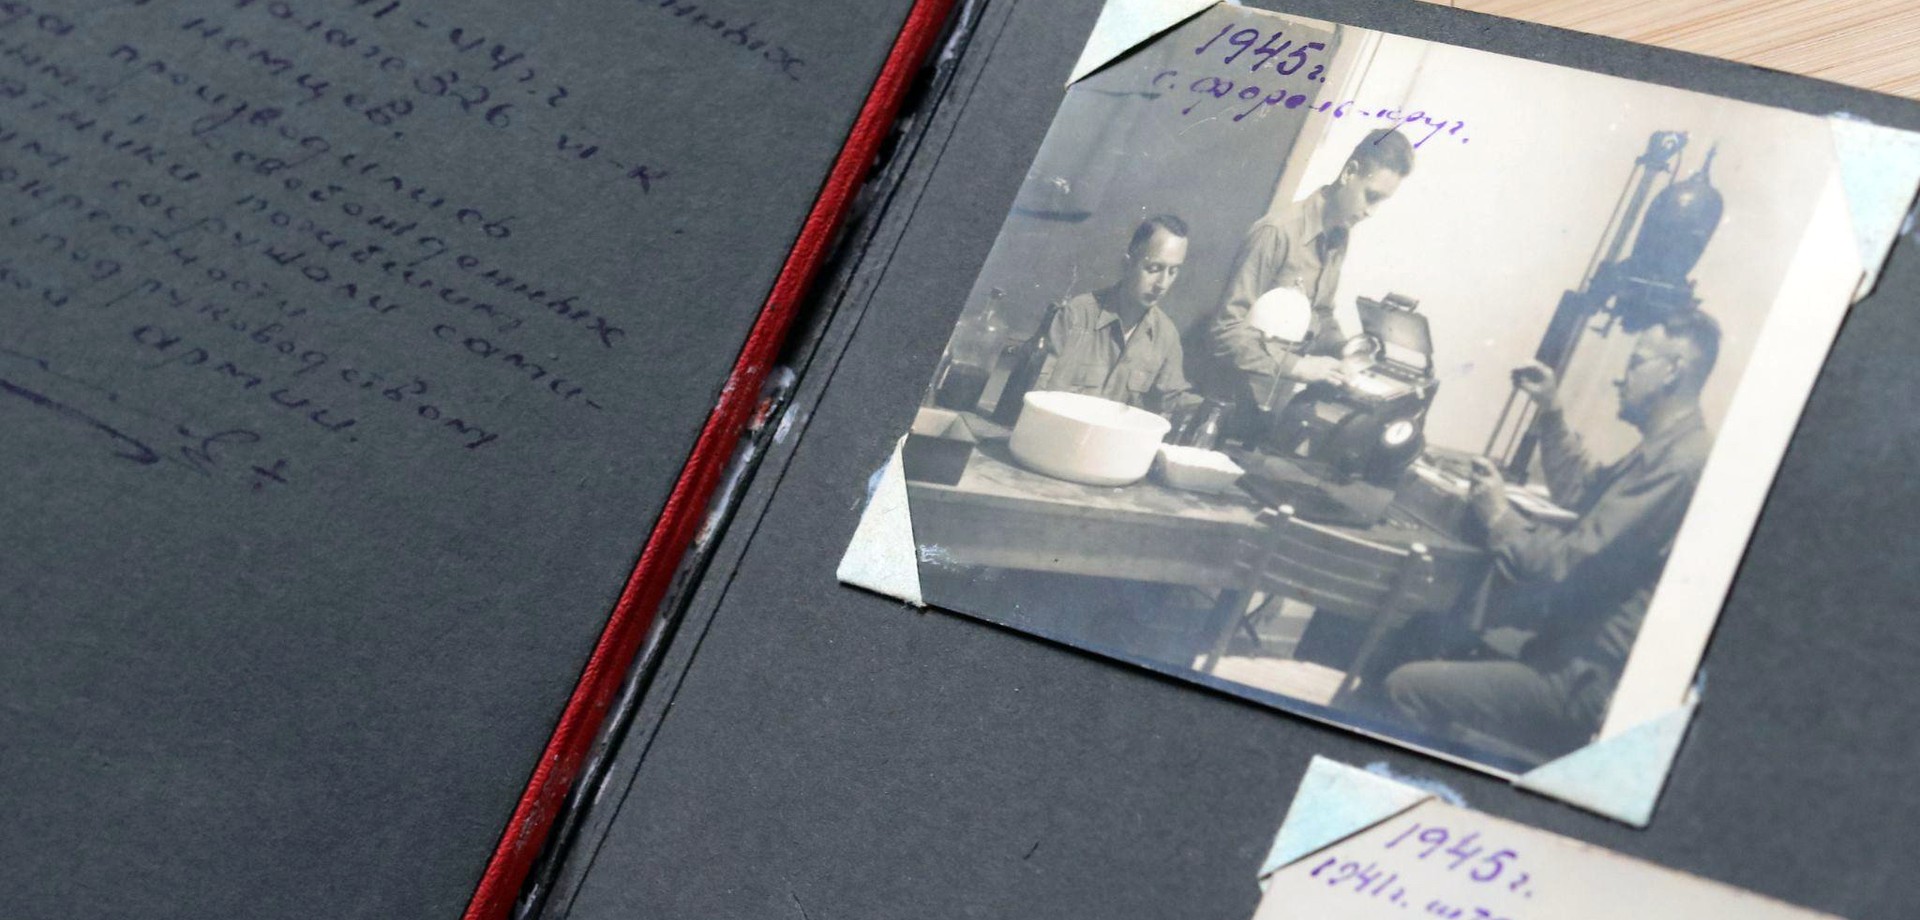 Für die Erinnerungskultur an das Kriegsgefangenenlager sind Ego-Dokumente wie das Fotoalbum von großer Bedeutung. Foto: LWL/Hecker